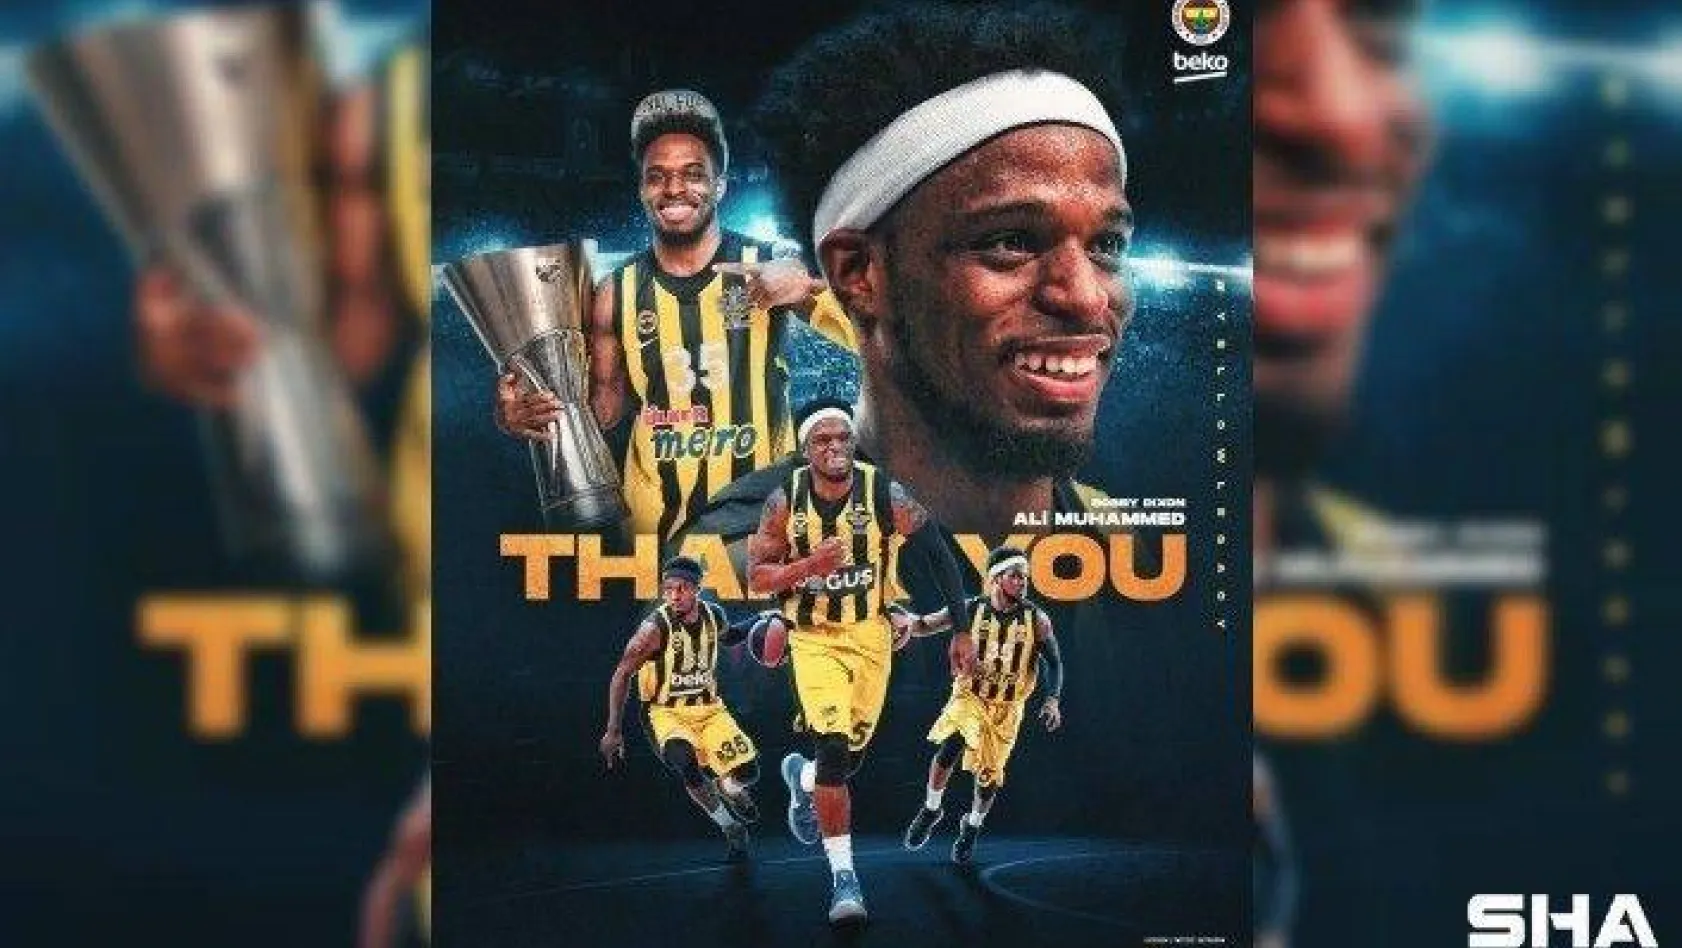 Fenerbahçe: &quot2015-16 sezonundan bu yana formamızı giyen ve bu süreçte elde ettiğimiz tarihi başarıların en önemli mimarlarından biri olan Ali Muhammed ile yollarımız ayrılmıştır."